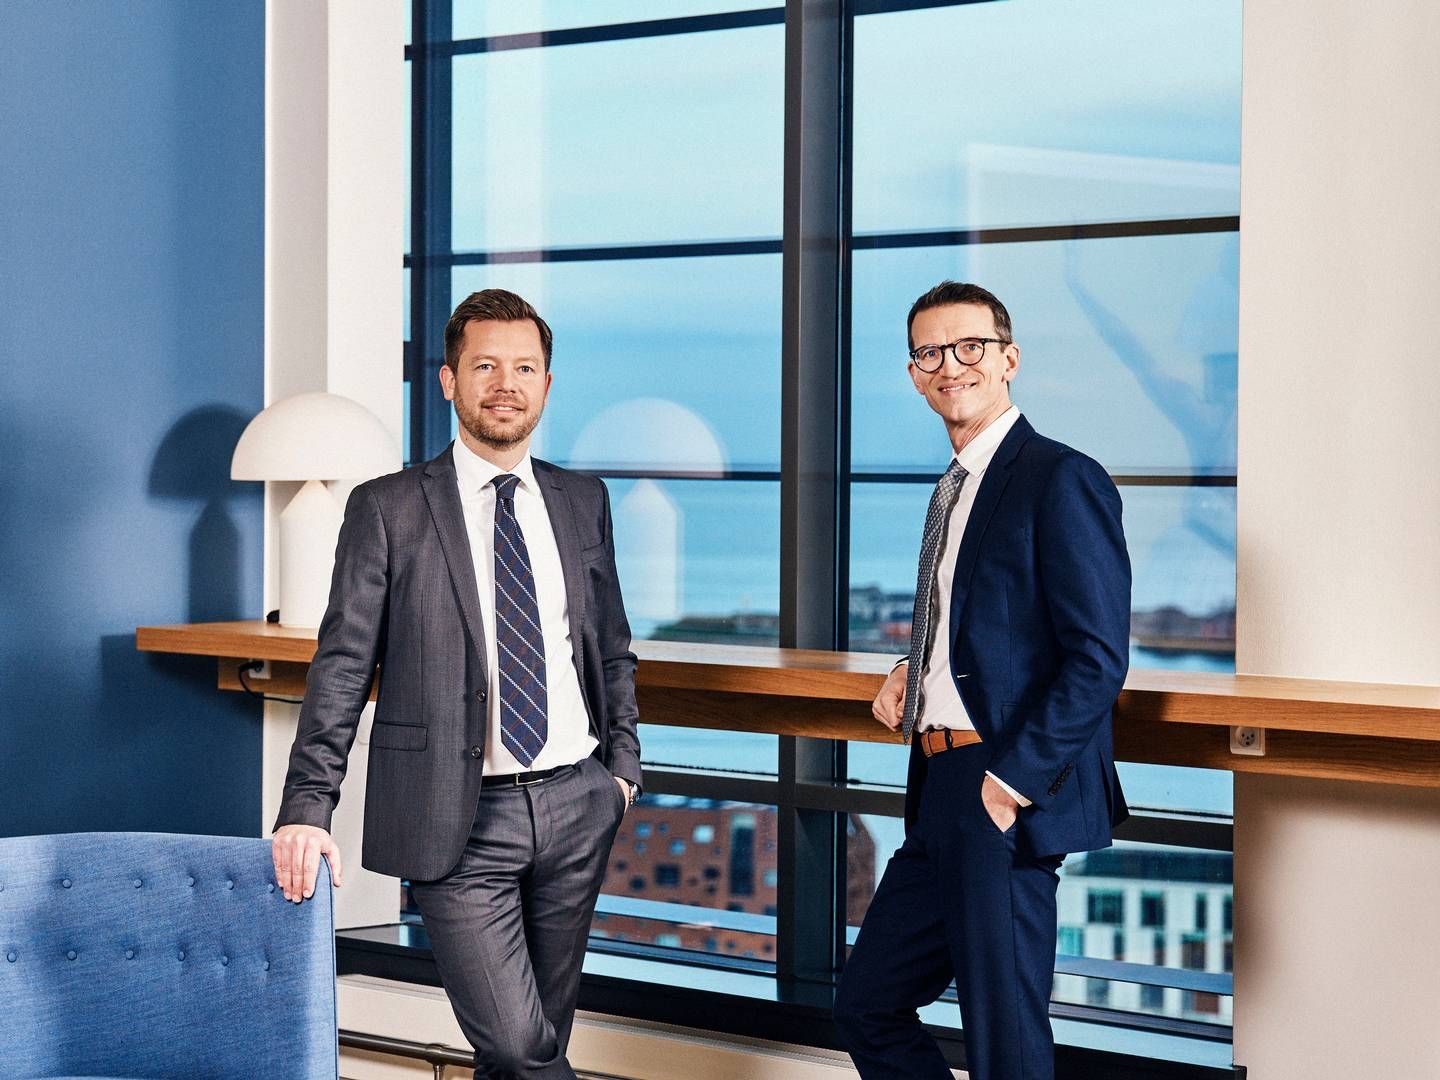 Kristoffer Westberg og Ulrik Krogh Holst kommer til fra henholdsvis projektudvikleren Innovater og revisions- og konsulentfirmaet Deloitte. | Foto: Jeppe Carlsen